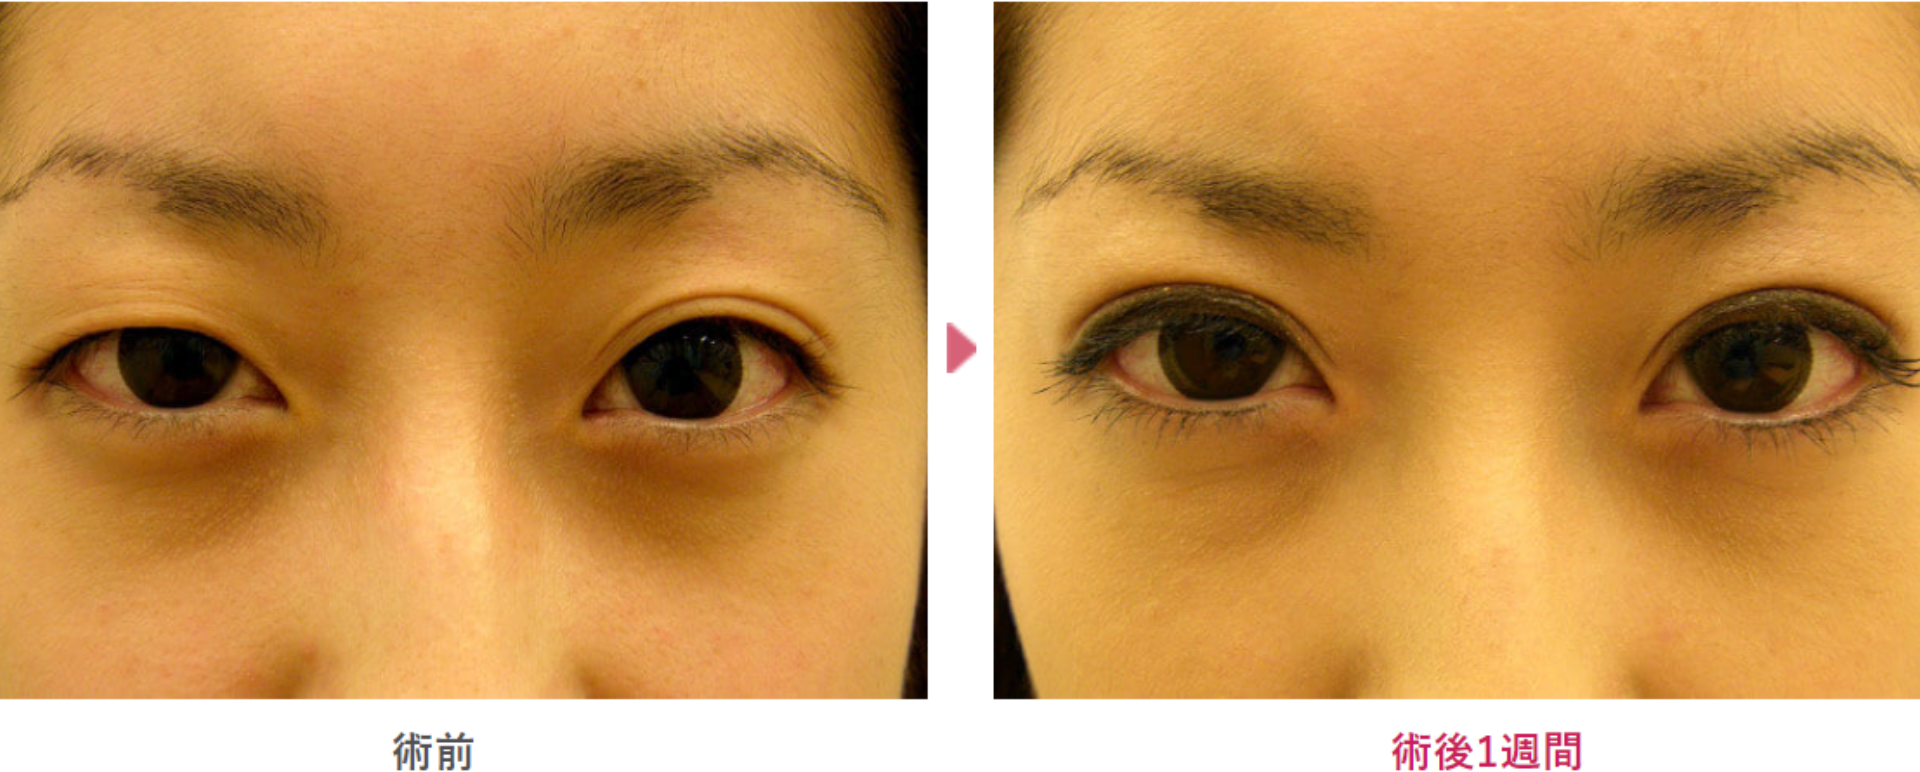 幅広二重埋没の術前と術後1週間（メイクあり）の見た目の変化を表す症例写真